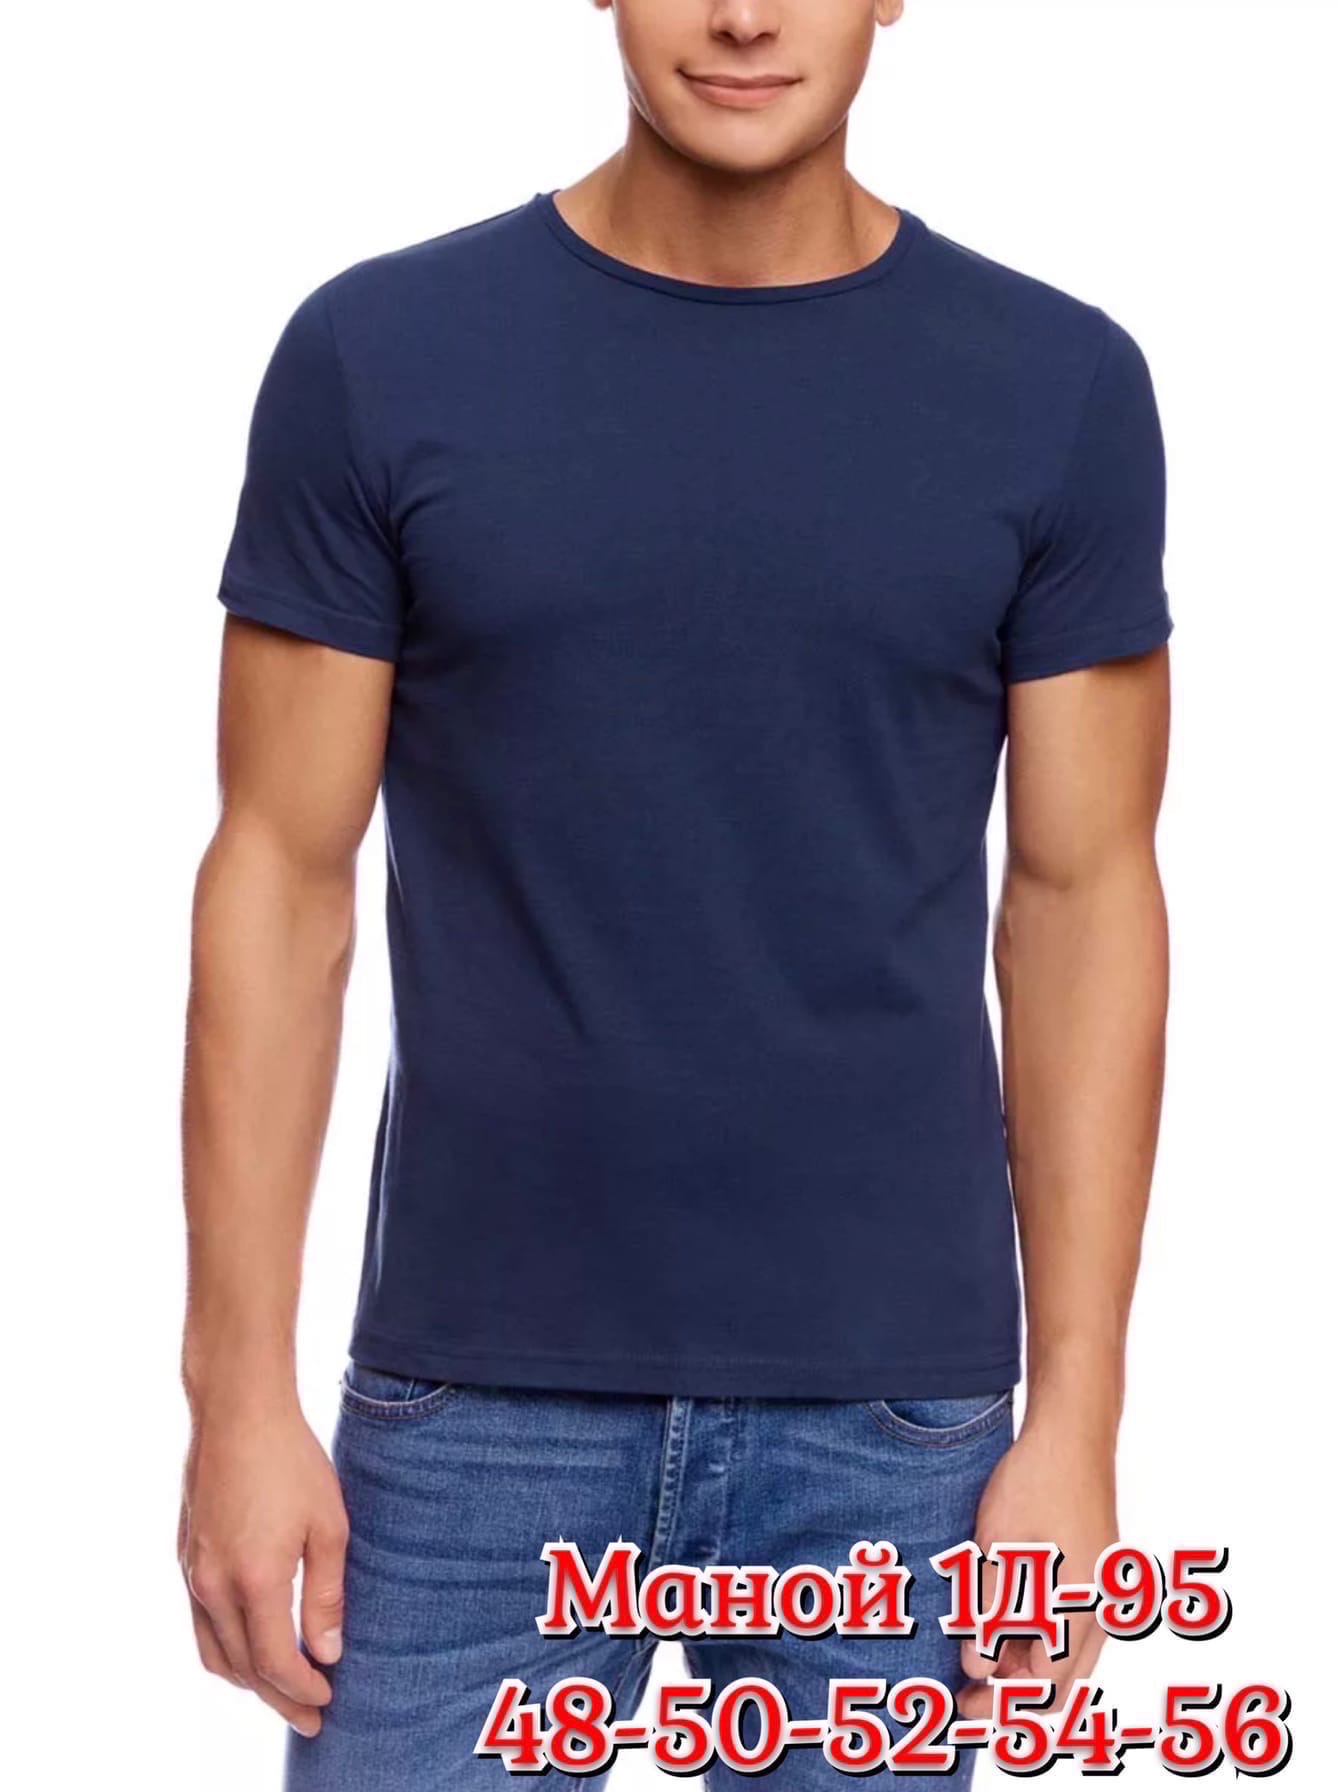 Озон интернет магазин для мужчин. Валберис футболки мужские. Темно синяя футболка мужская. Мужчина в синей футболке. Мужская футболка хлопок.